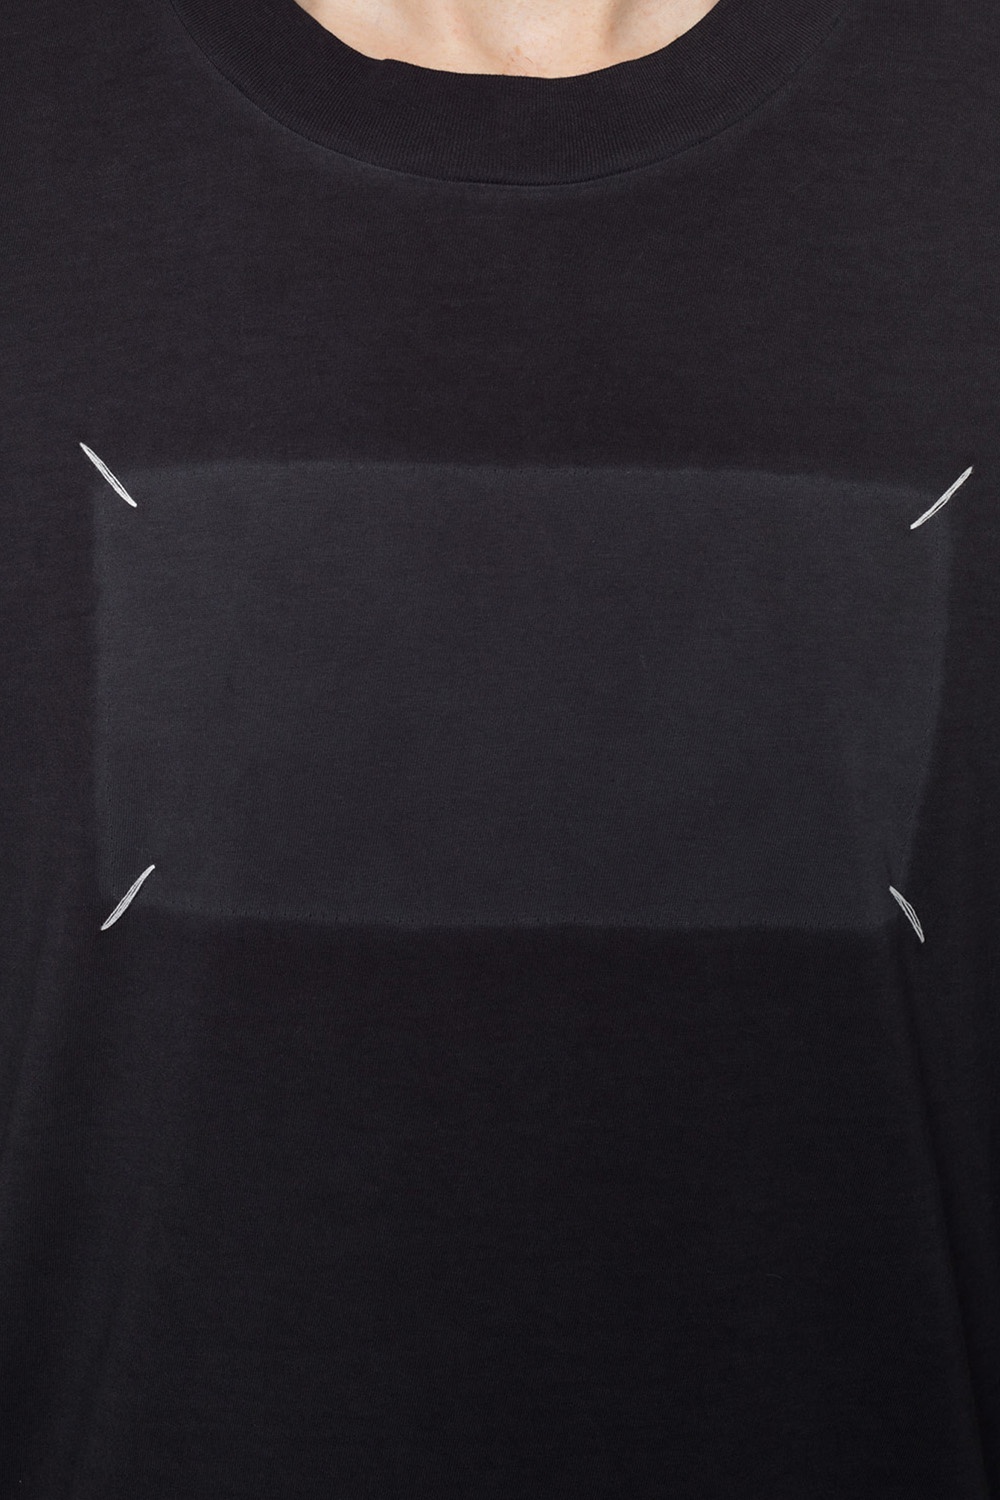 Grey T-shirt with stitching details Maison Margiela - Vitkac France